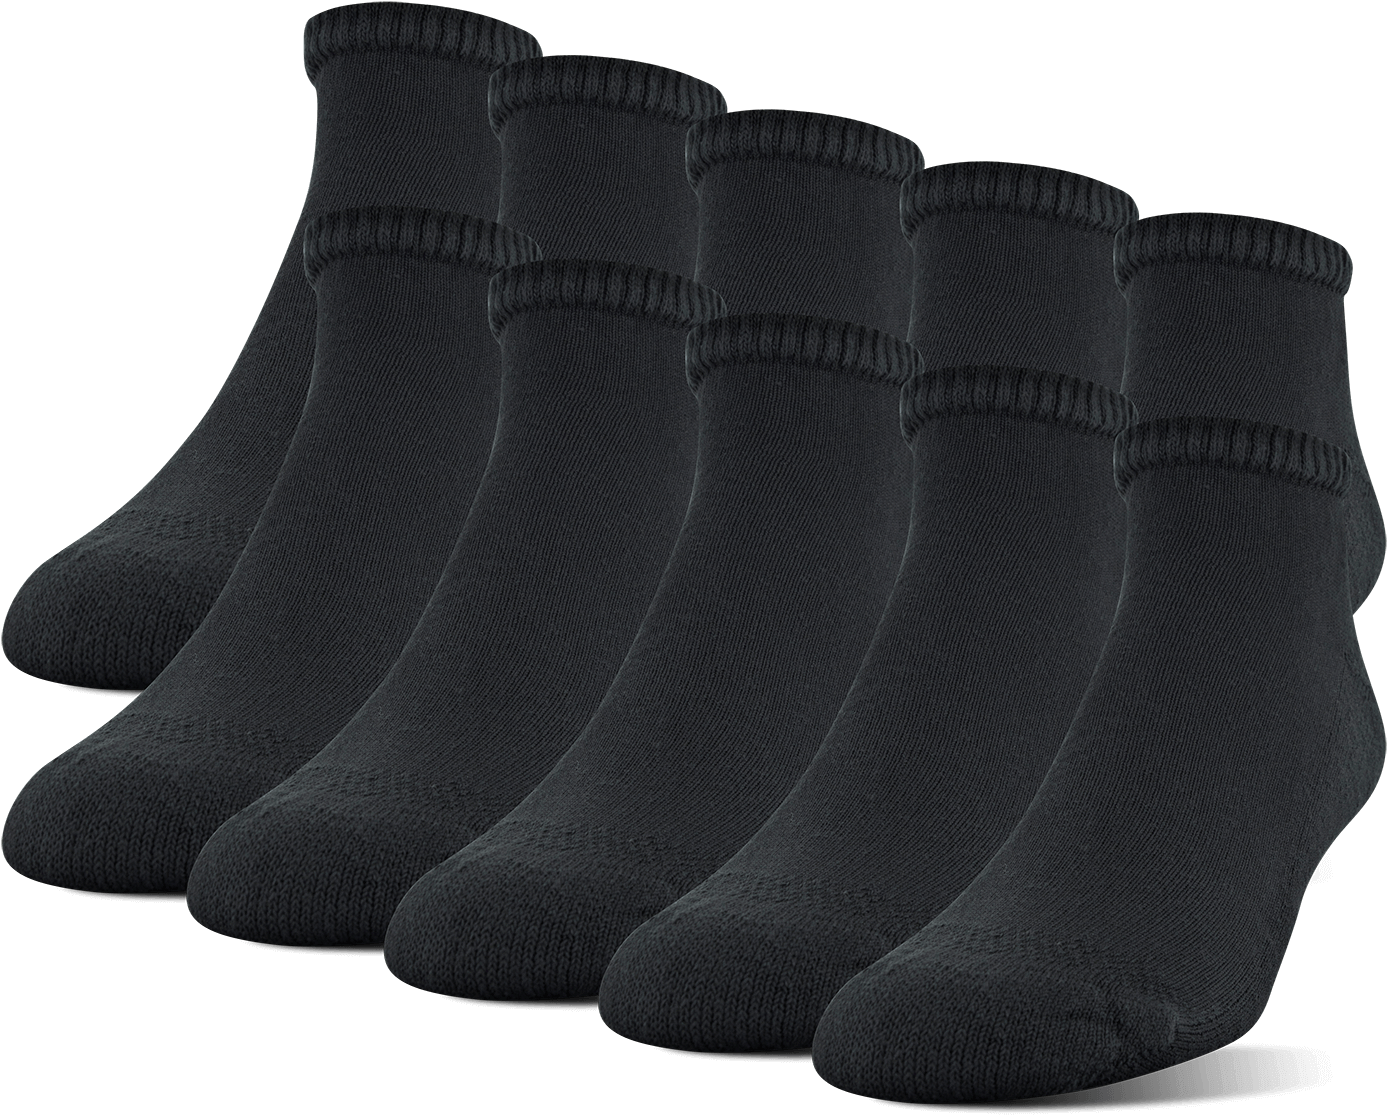 Gildan Men's Lowcut Socks - Sock (1400x1400), Png Download